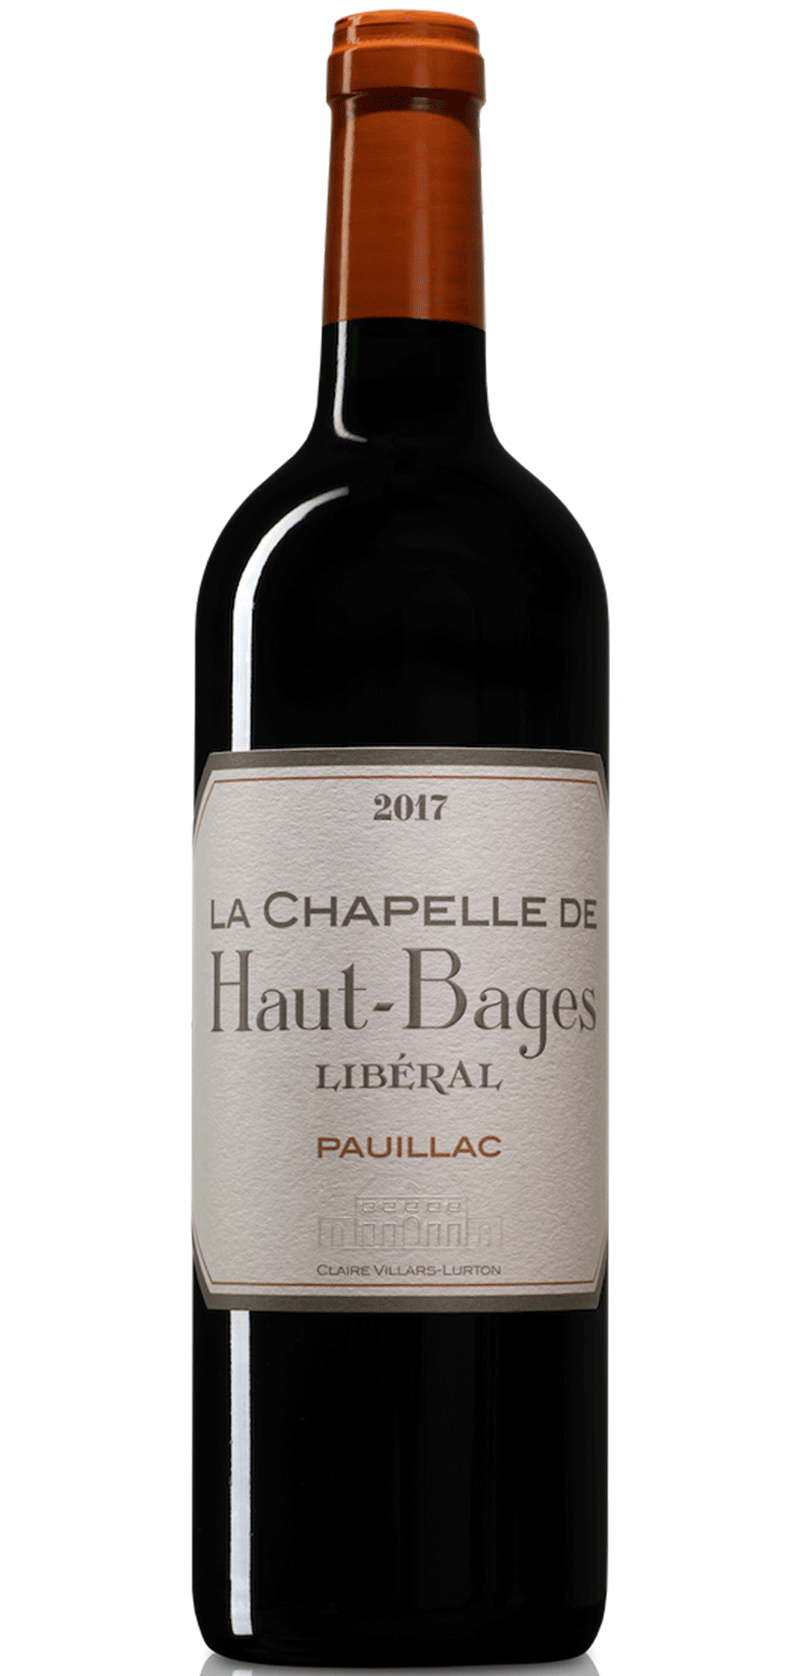 La Chapelle de Haut-Bages Libéral 2017 – Pauillac - Vin rouge